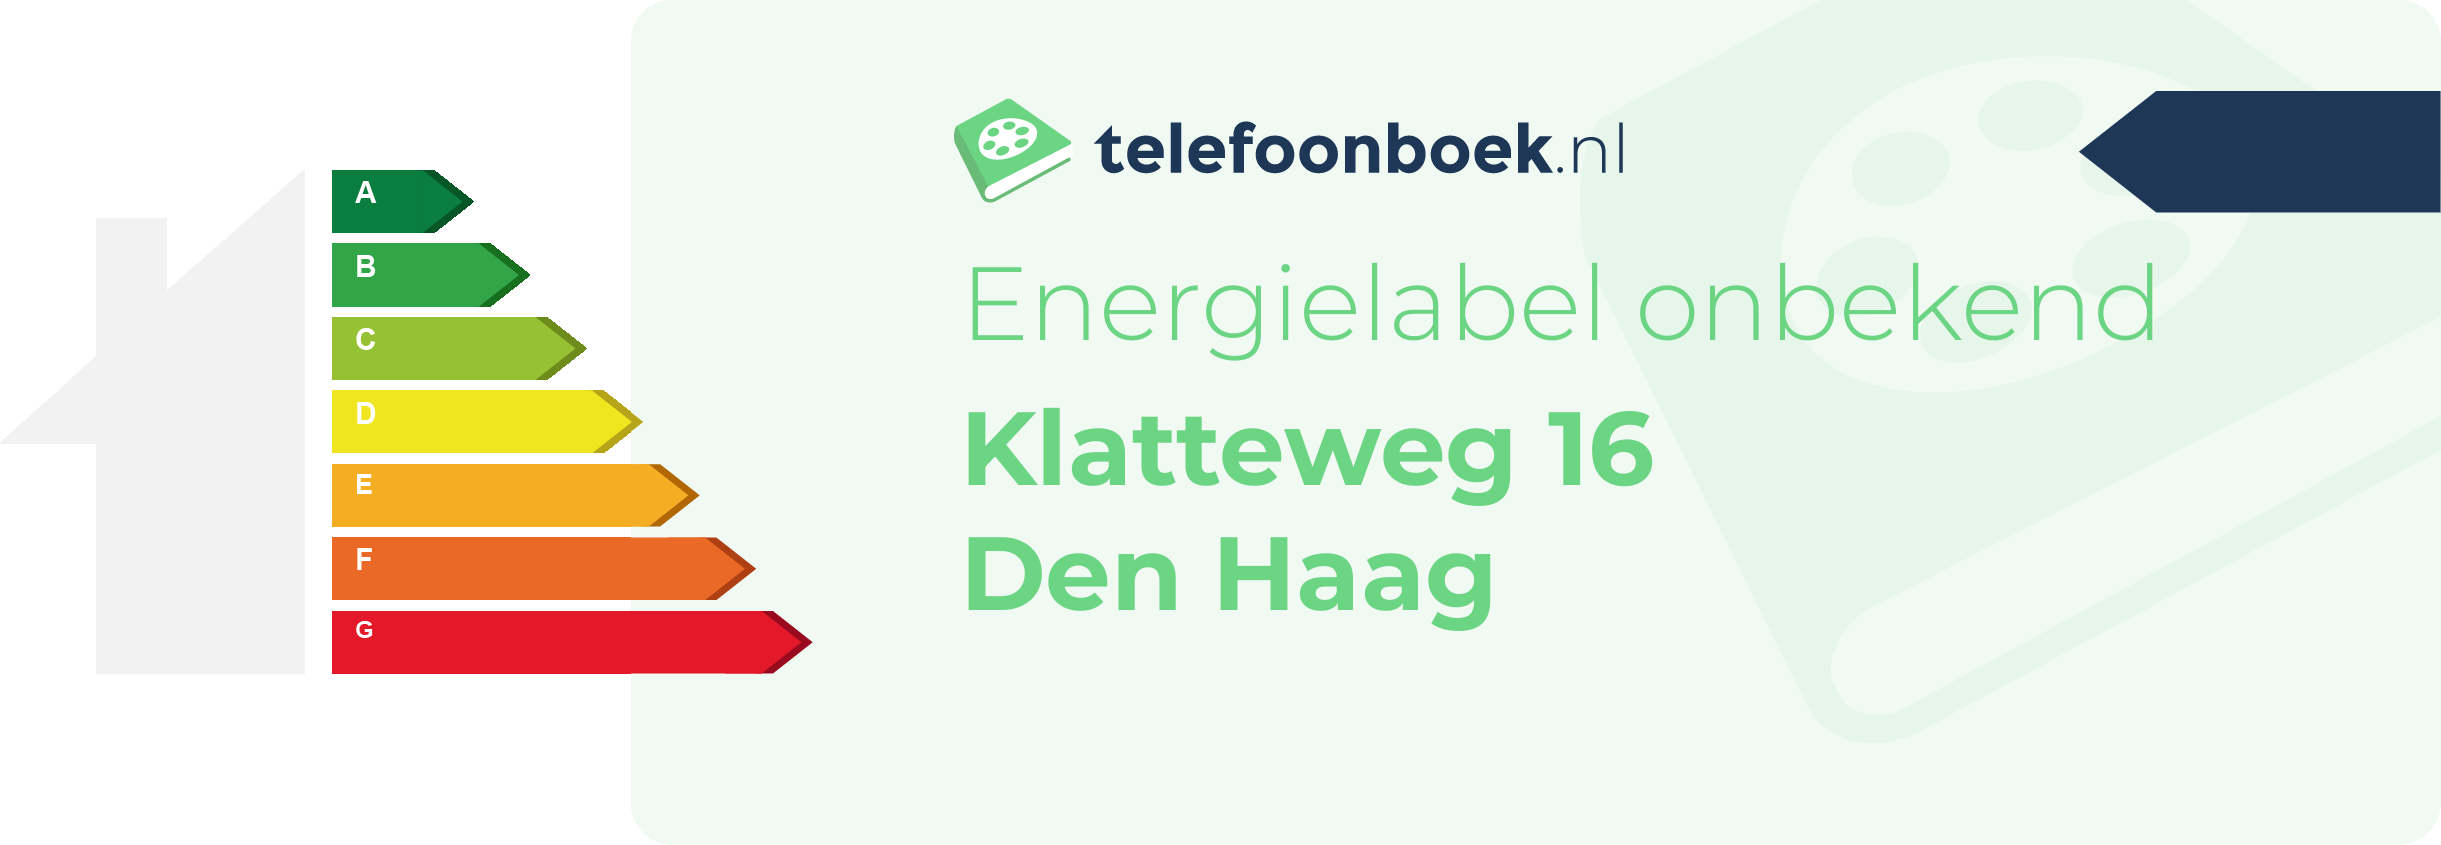 Energielabel Klatteweg 16 Den Haag